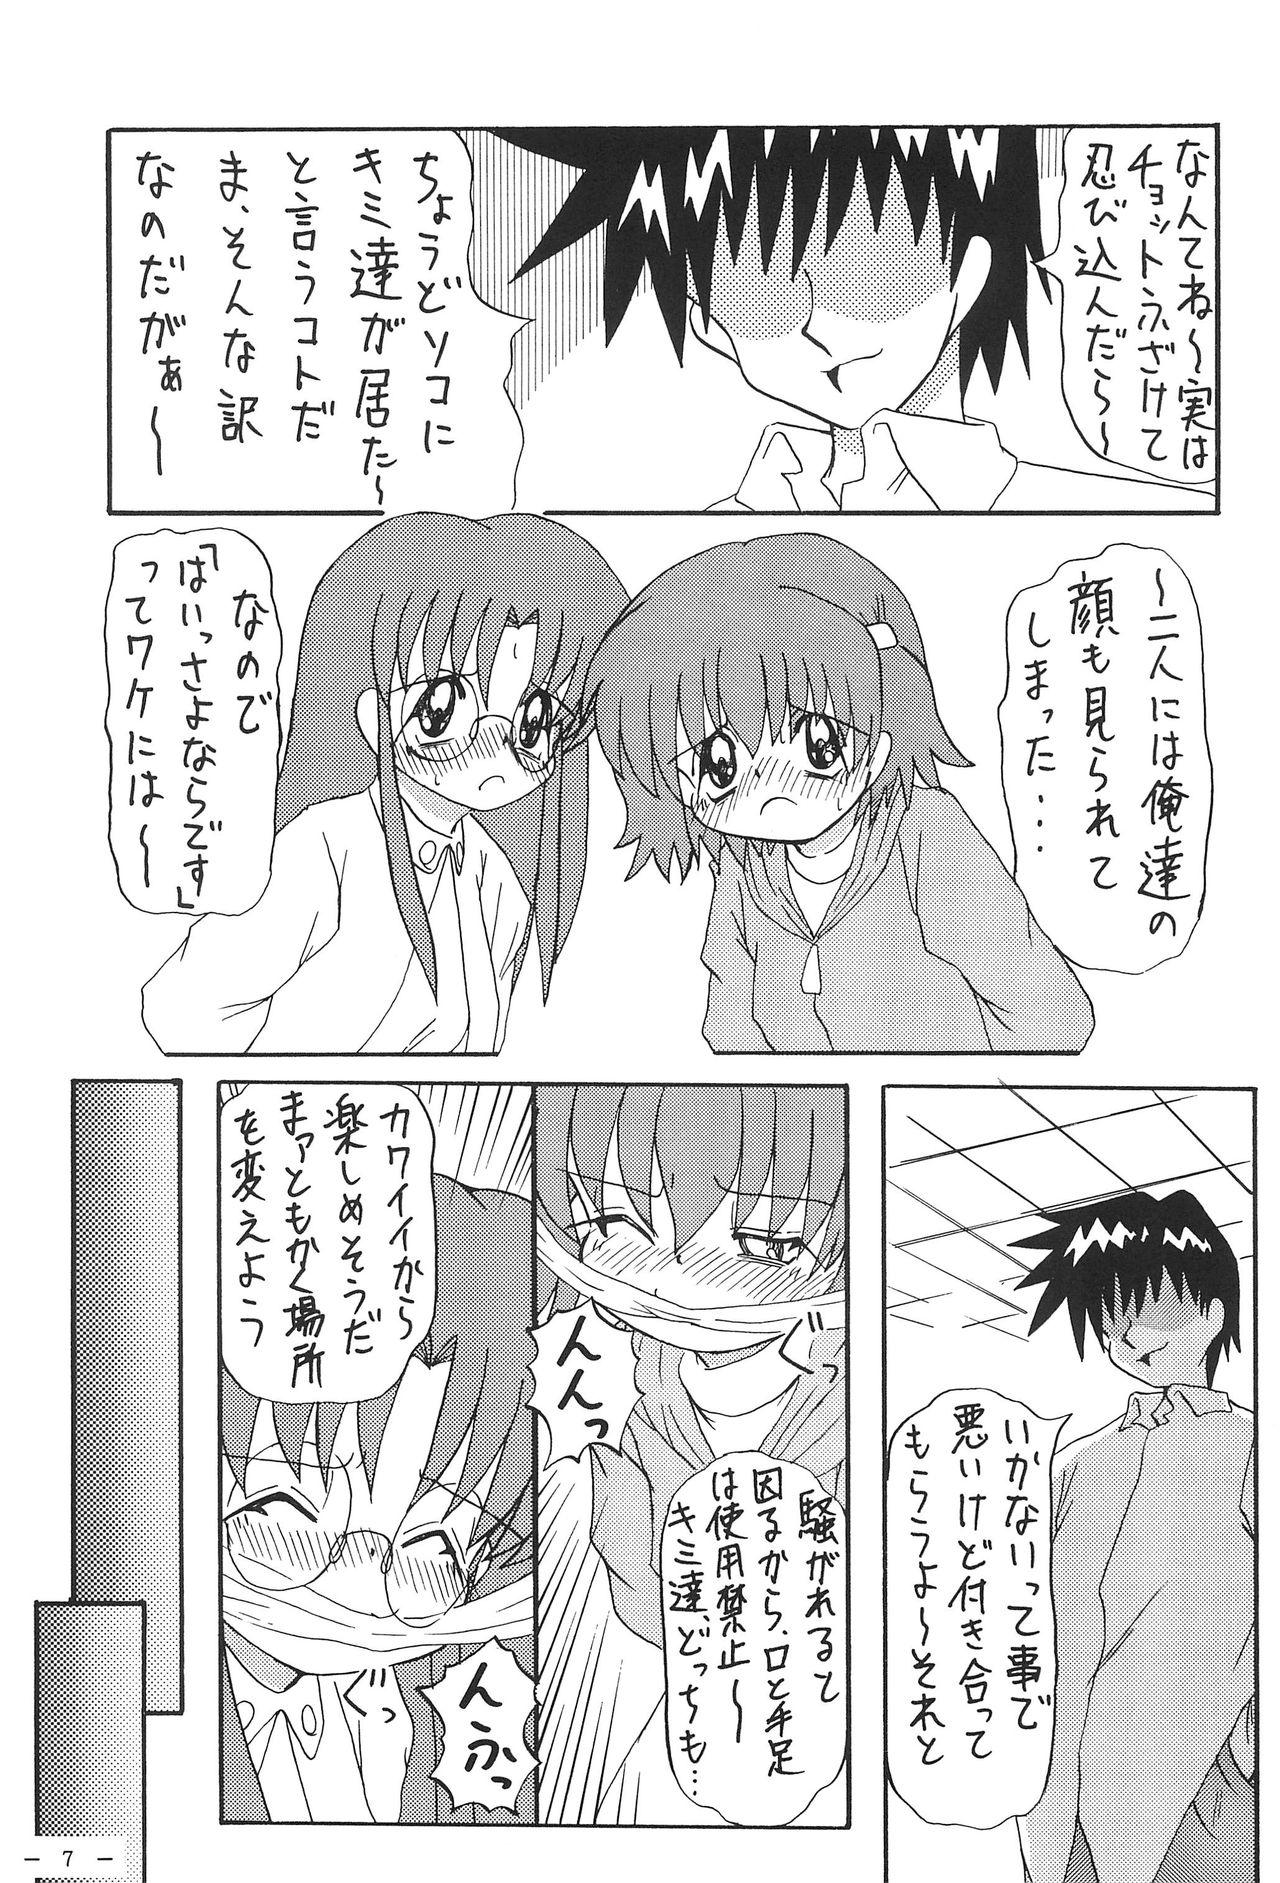 Jock Roko to Kana no Houkago no Kiki - Hamtaro Doublepenetration - Page 9